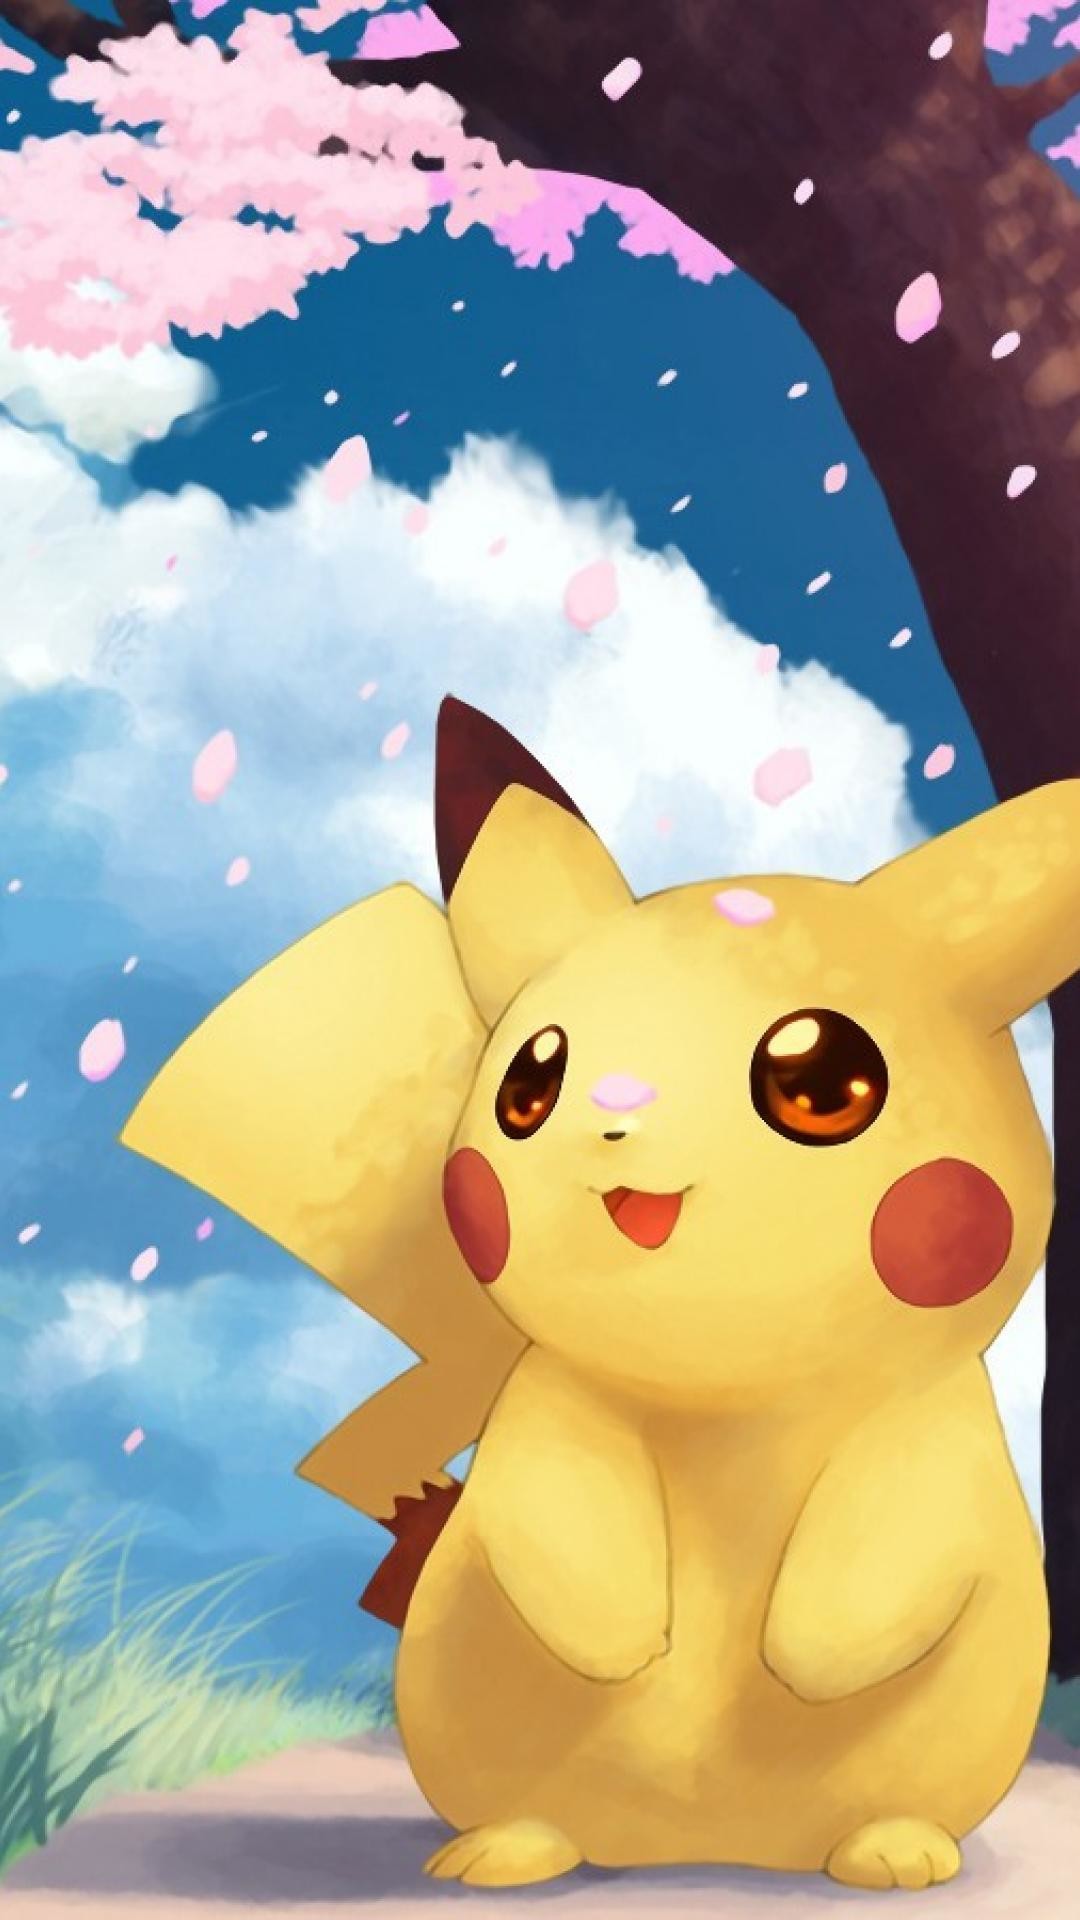 Hình nền Pokemon đáng yêu cho iPhone: Bạn đang tìm kiếm một hình nền xin thật đáng yêu cho chiếc iPhone của mình sao? Thử tìm kiếm những hình ảnh Pokemon đáng yêu để tạo ra một màn hình chính thật tuyệt vời!